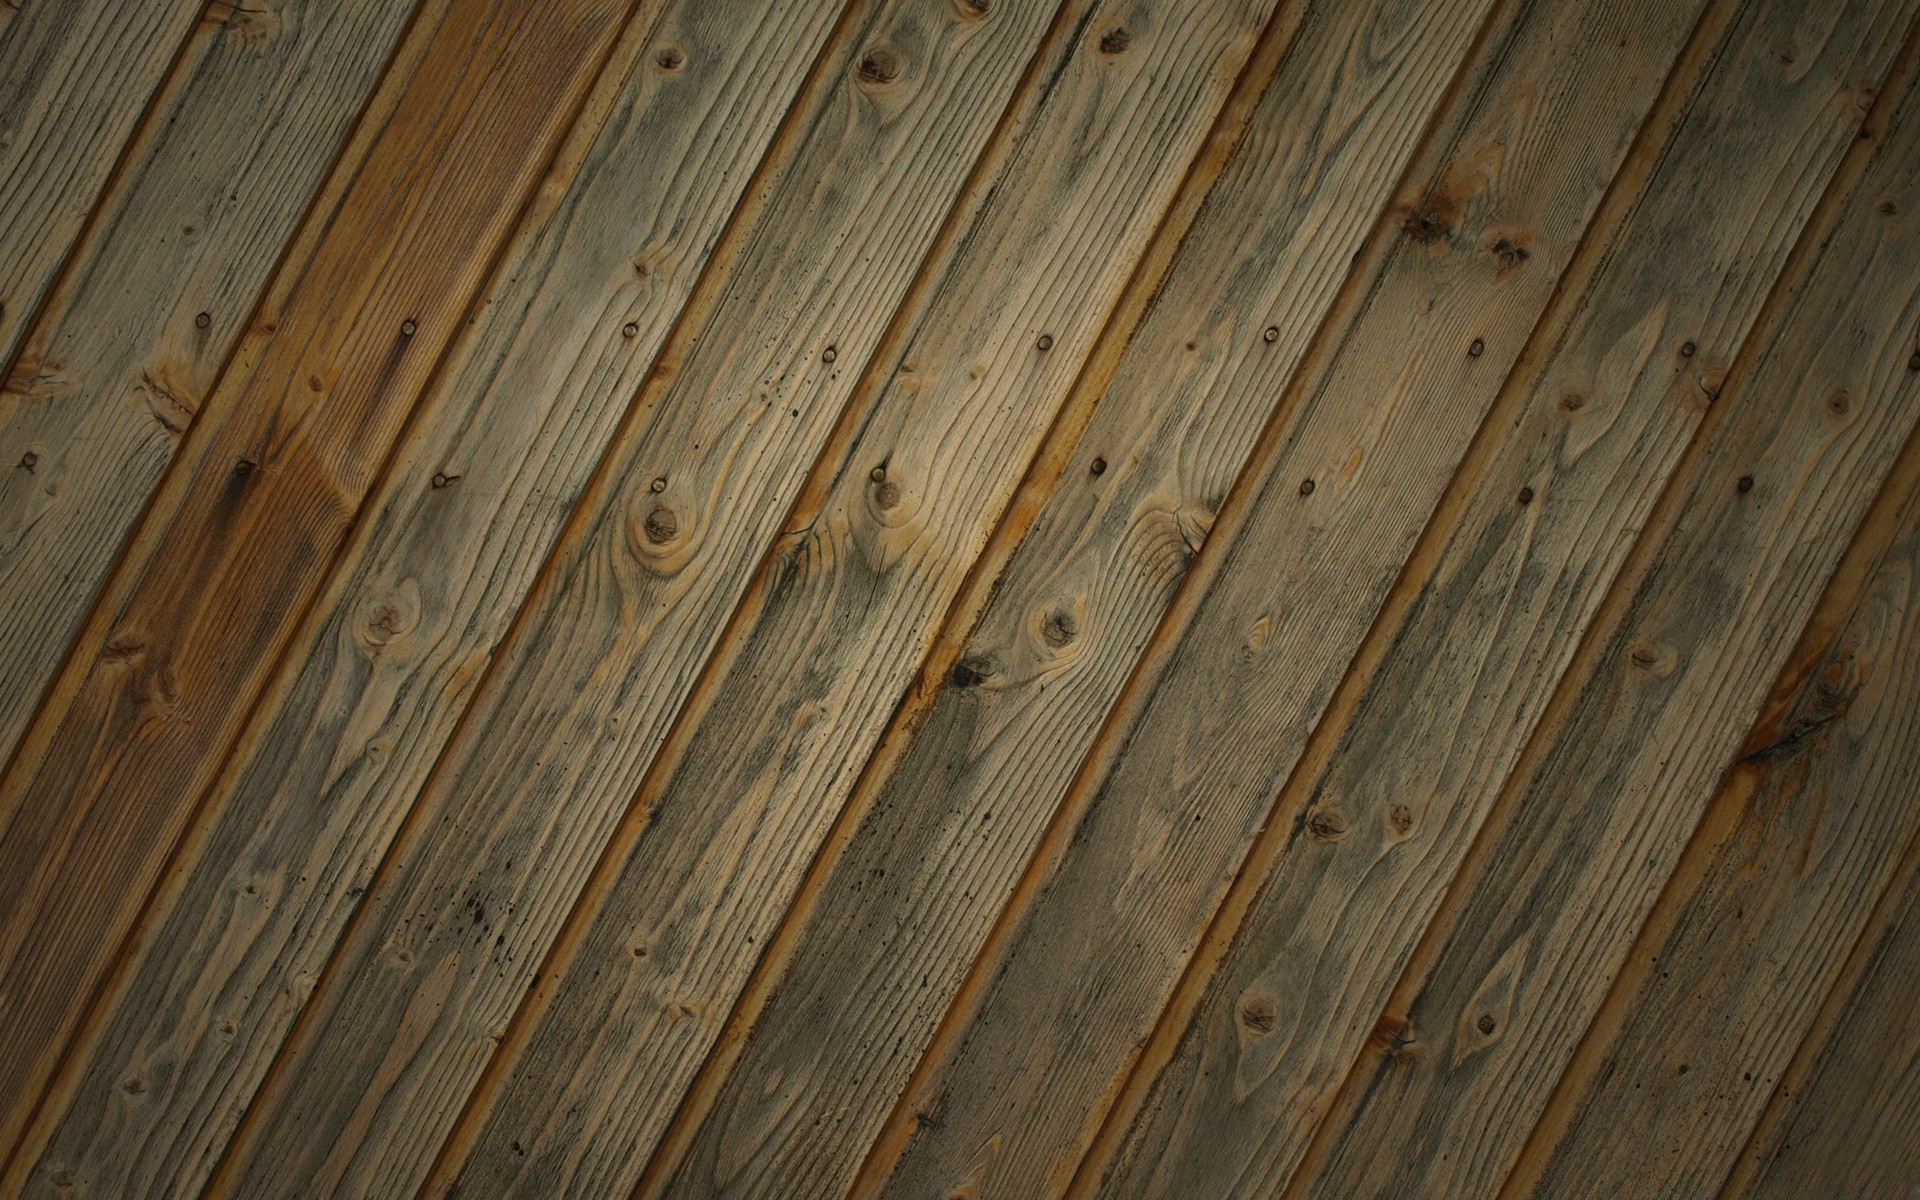 винтаж пол древесины грубо текстура старый деревянный шаблон поверхность панель журнал стены ткань плотницкий рабочего стола деревянные ретро доска строительство дизайн паркетный